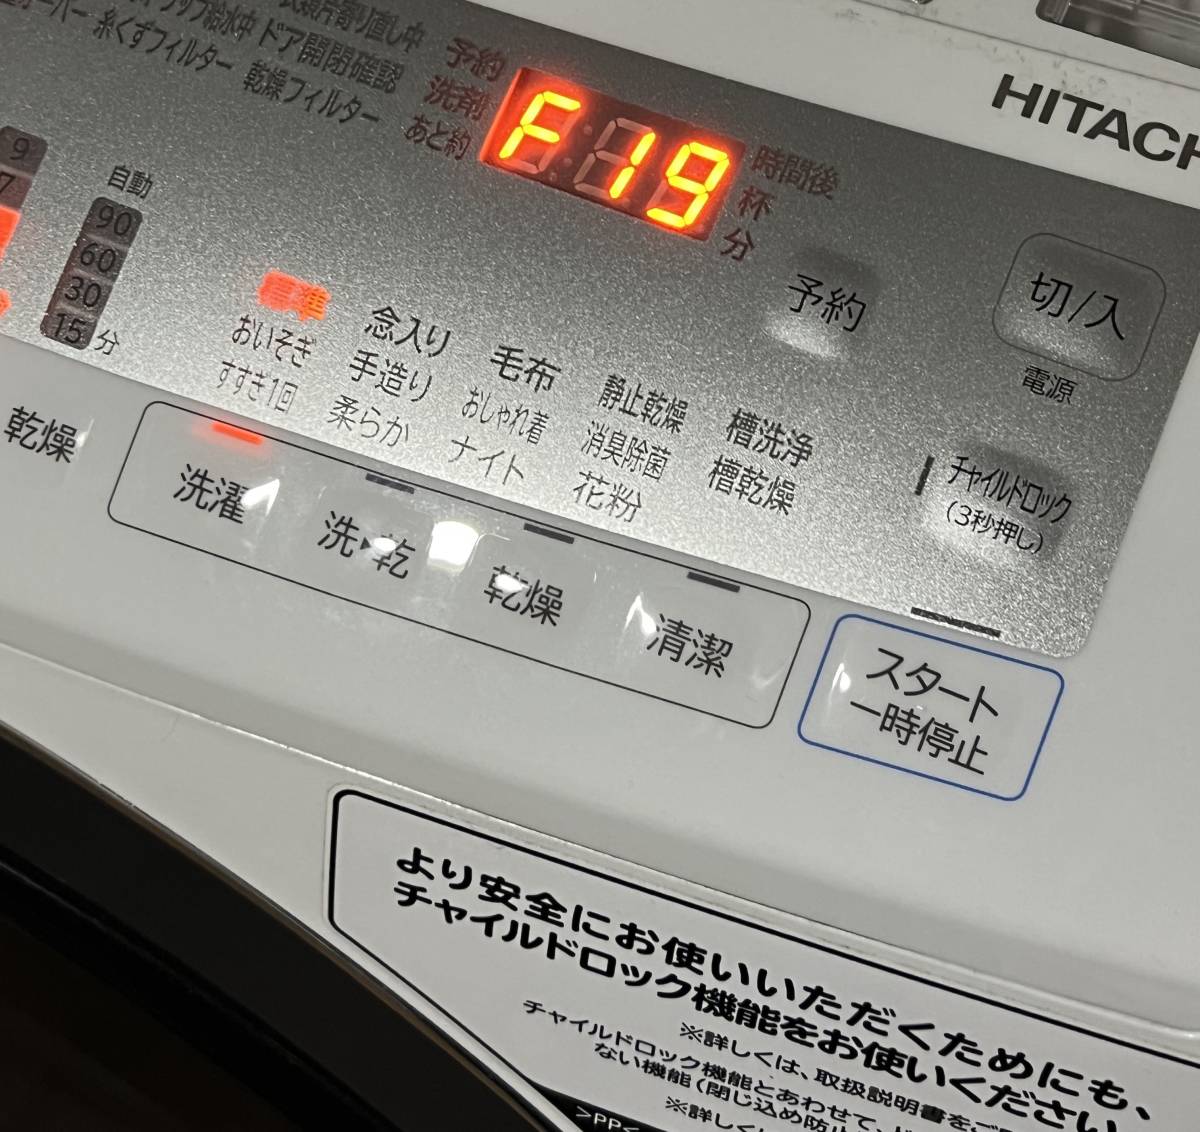 HITACHI ドラム式 洗濯乾燥機 BD-SG100FL エラー F19 DIY修理交換部品 メイン基板用冷却ファン NMB-MAT 2410EL-05W-M49 修理交換手順公開中の画像4